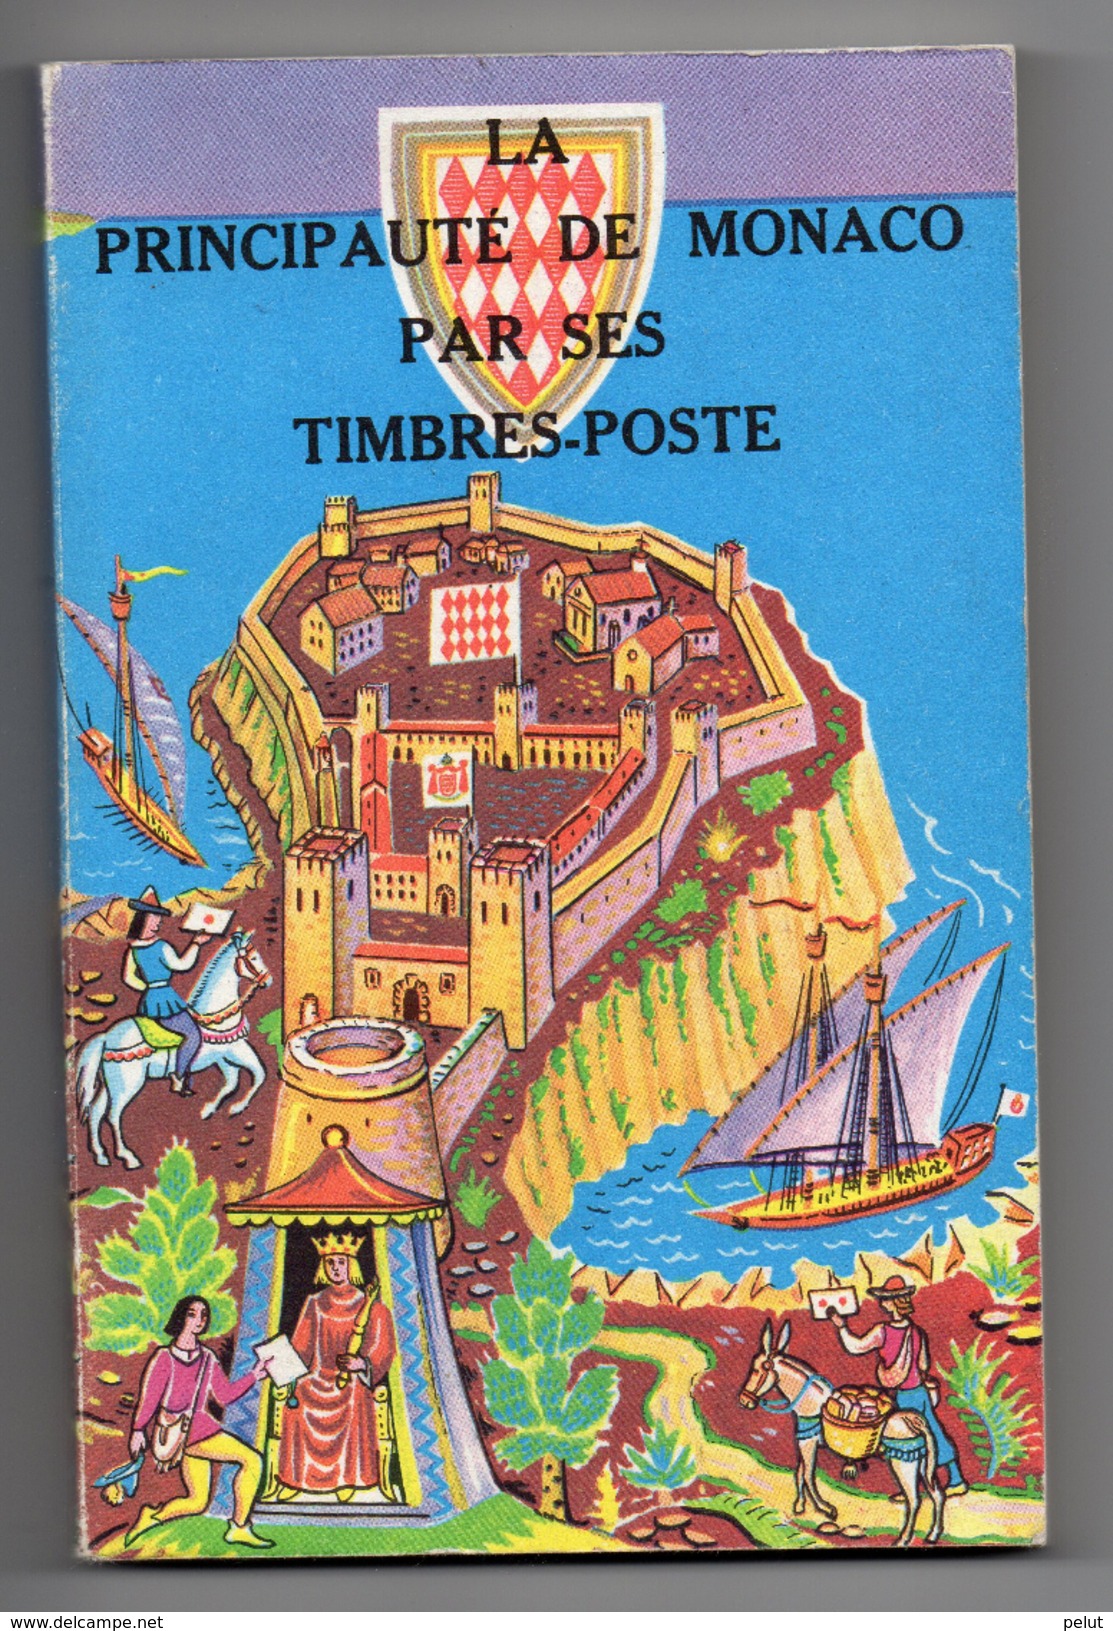 La Principauté De Monaco Par Ses Timbres-poste, édition 1972 Par H. Chiavassa - Philately And Postal History